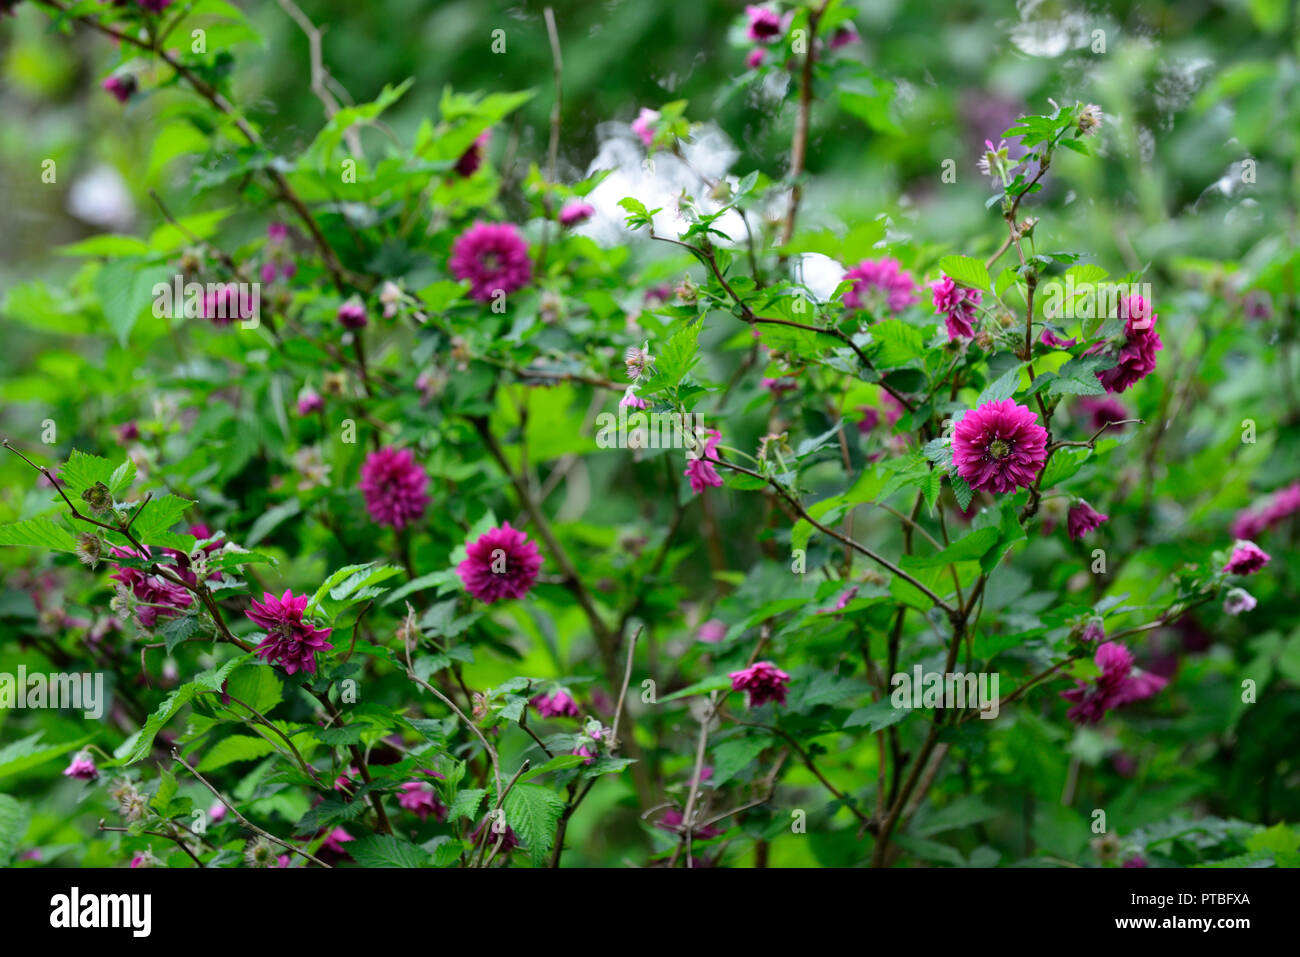 Rubus spectabilis flore pleno,double olympique,ronce remarquable, violet-rose fleurs,fleurs,fleurs,arbustes,formation,fourrés arbustifs,printemps,fleurs,fleurs,,bleu ... Banque D'Images